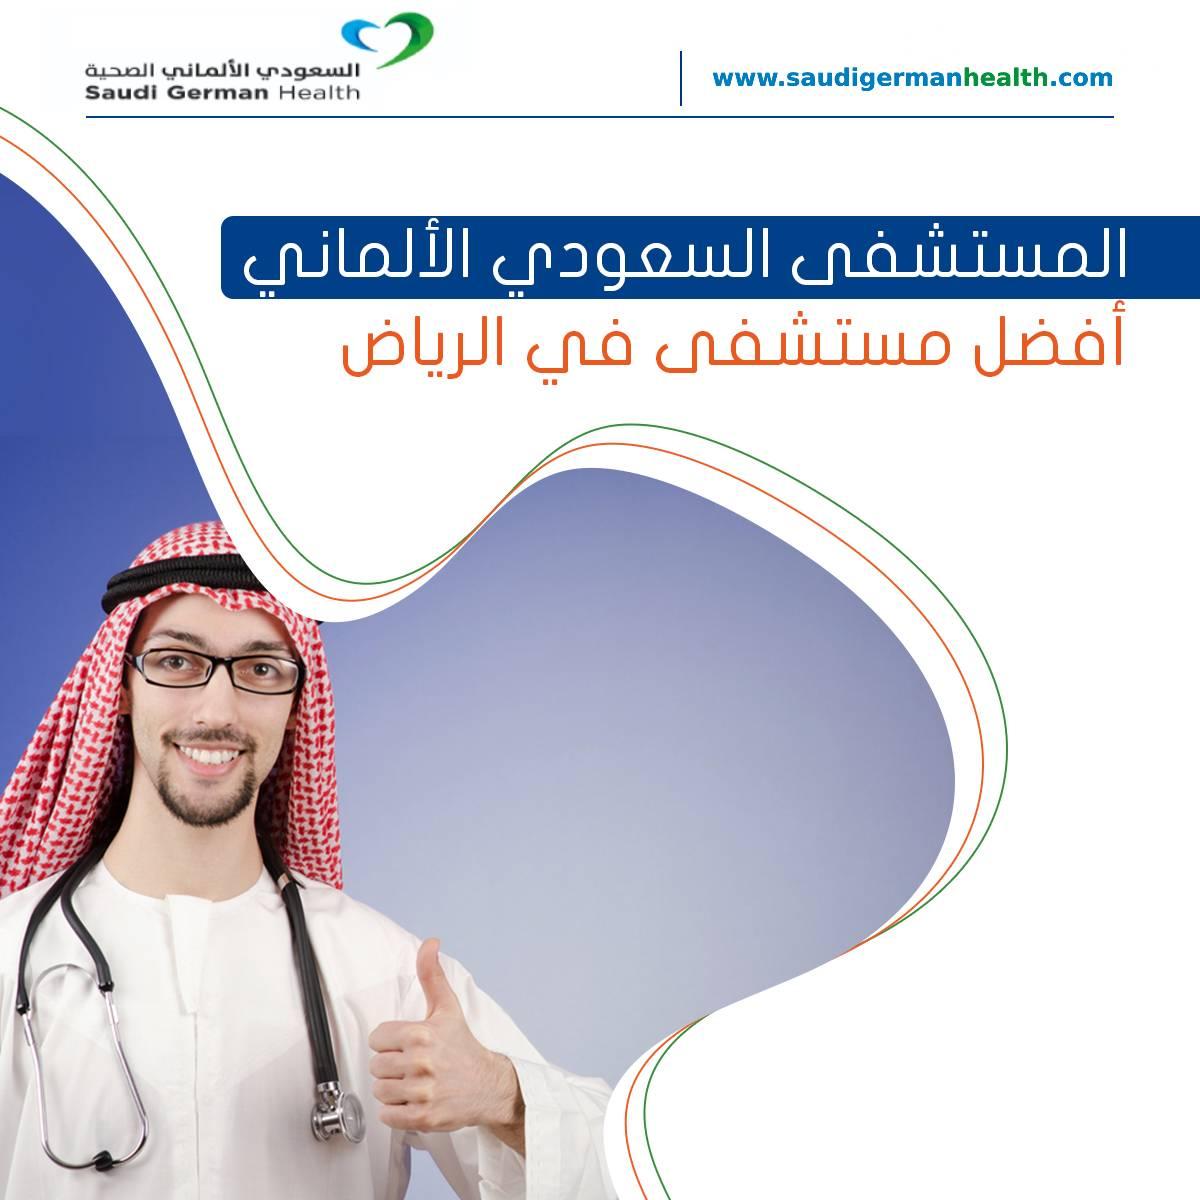 المستشفى السعودي الألماني أفضل مستشفى في الرياض